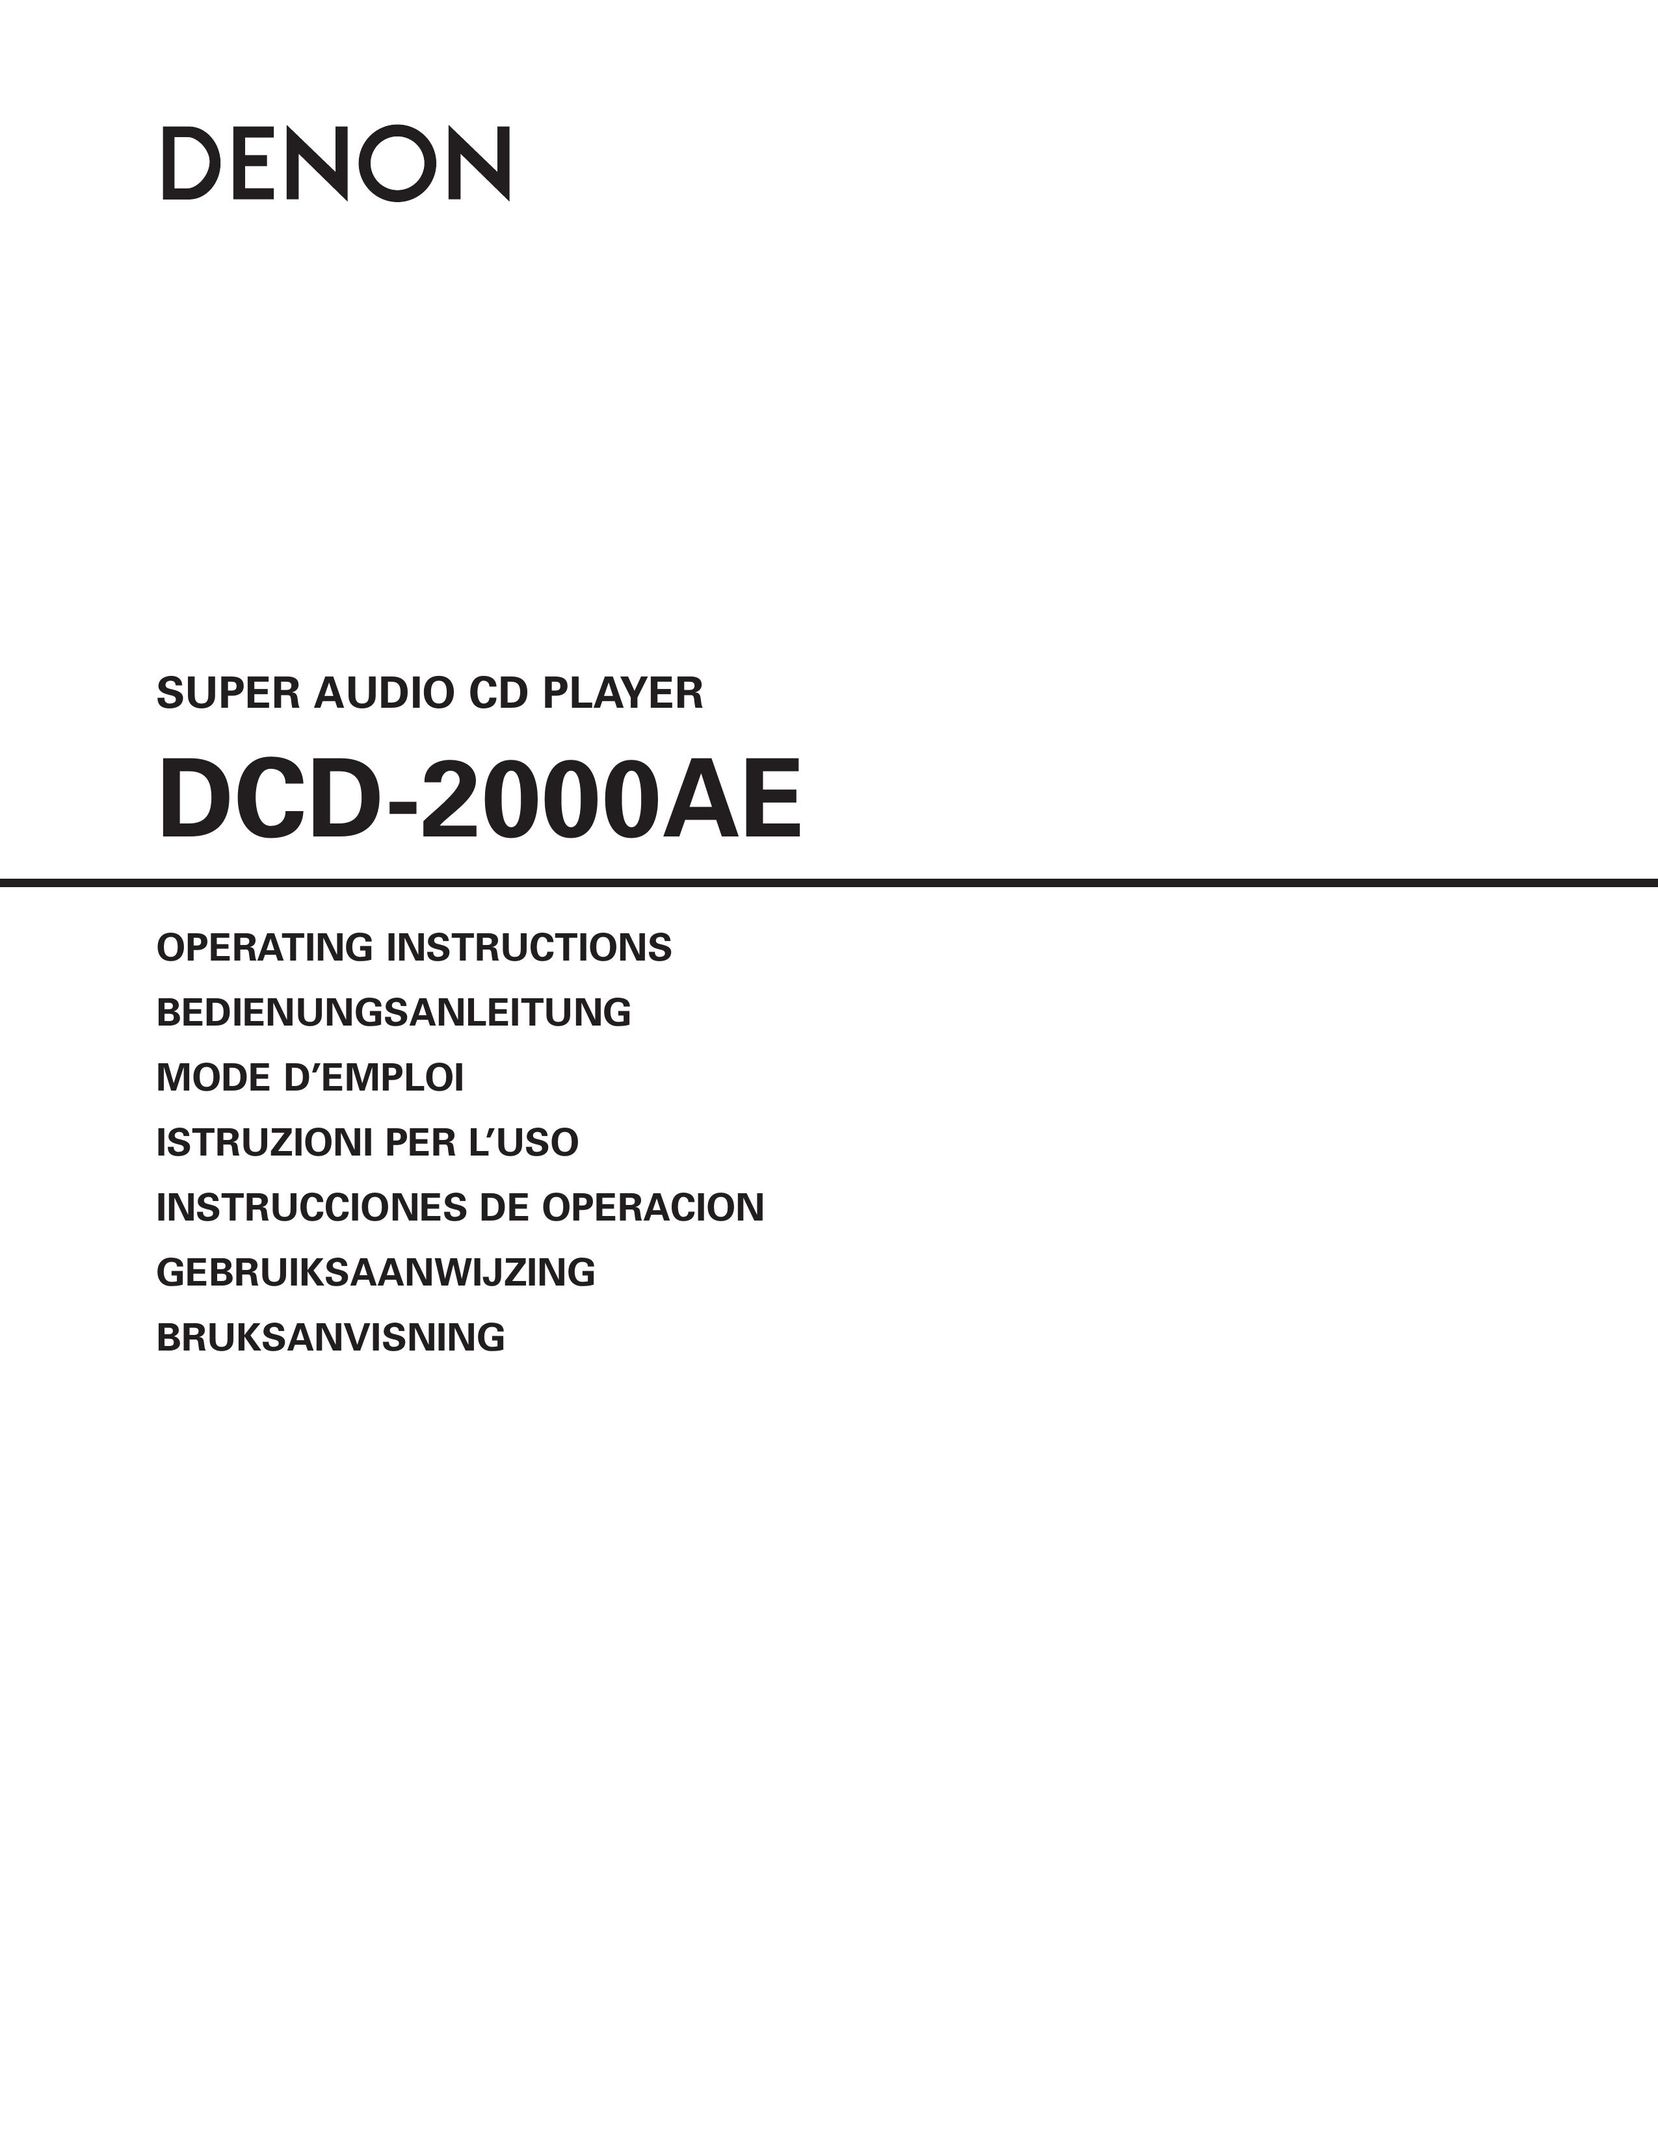 Denon DCD-2000AE CD Player User Manual